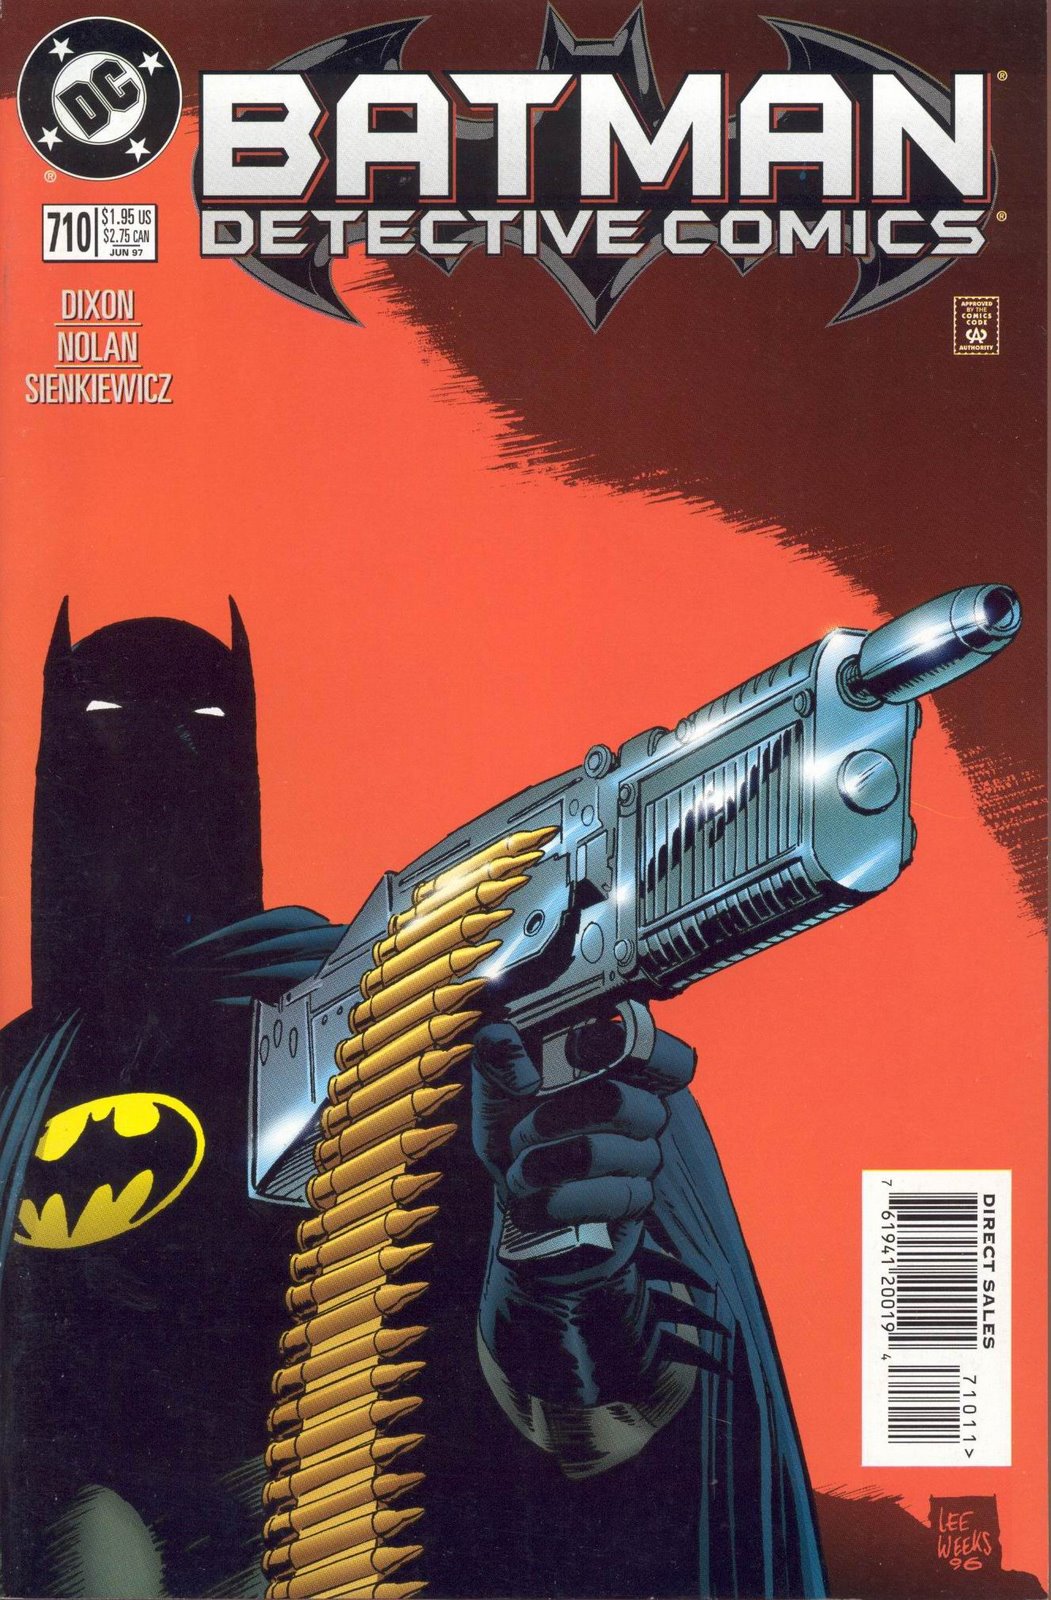 Nerdovore: The History of Batman Using Guns